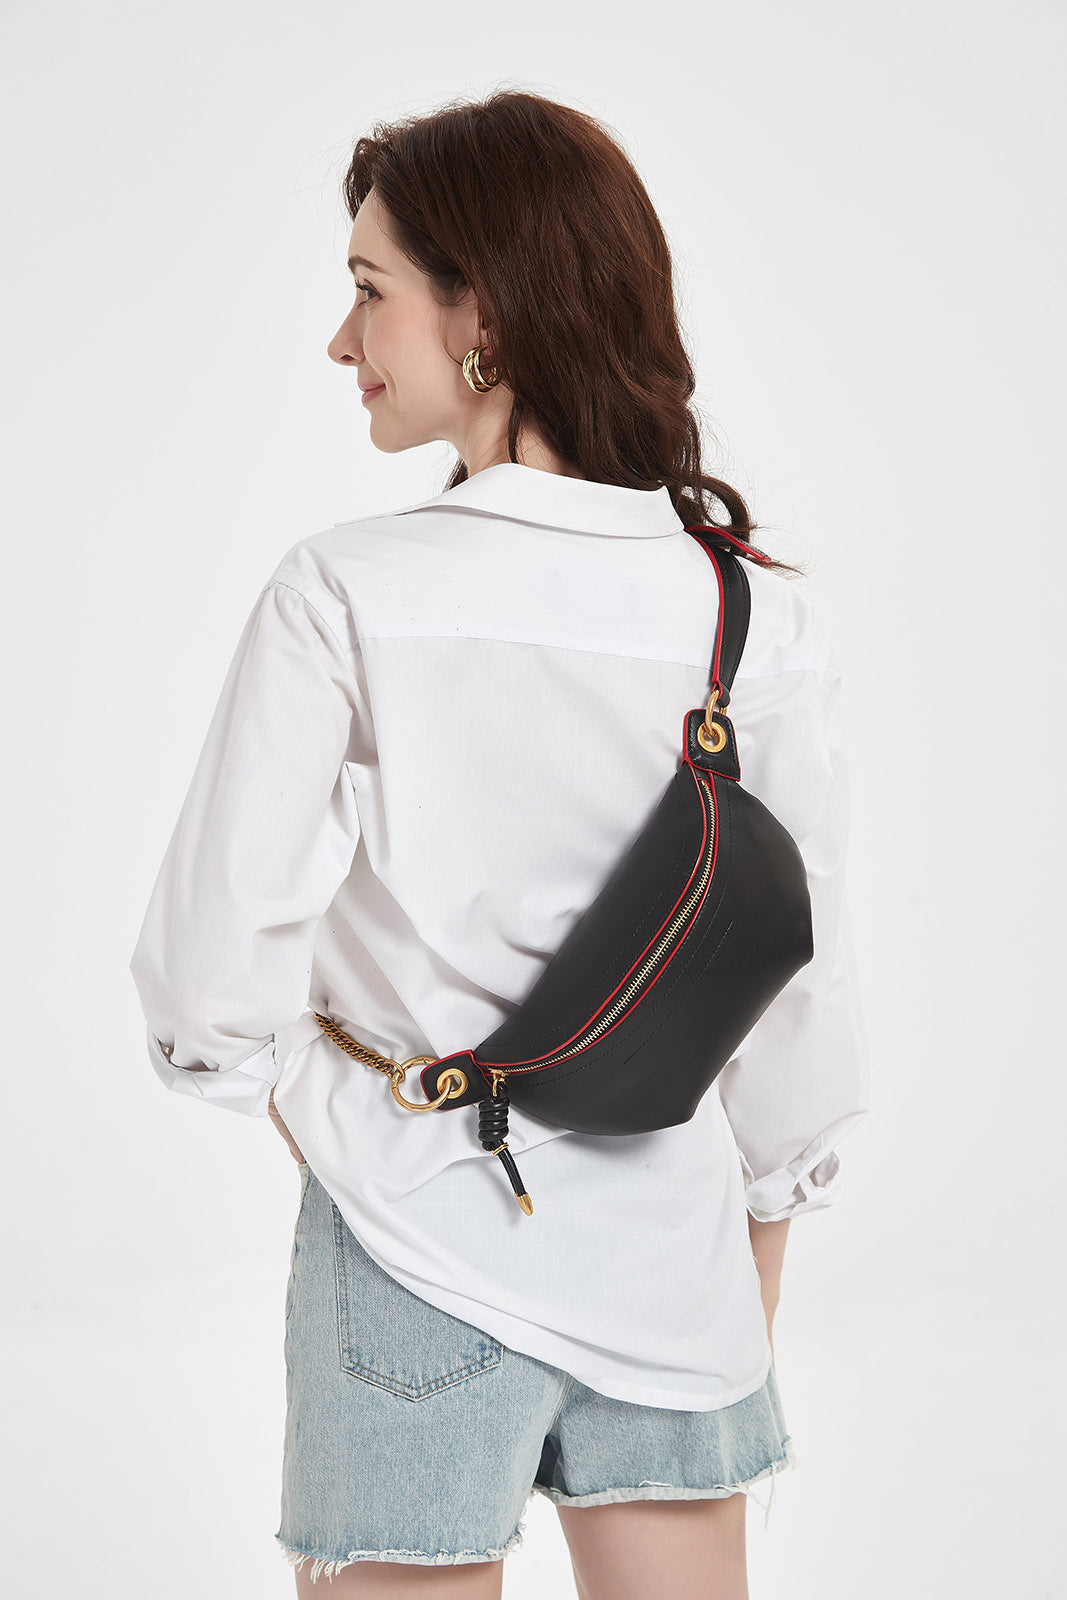 HIMODA genuine leather sling bag- black fanny pack 03